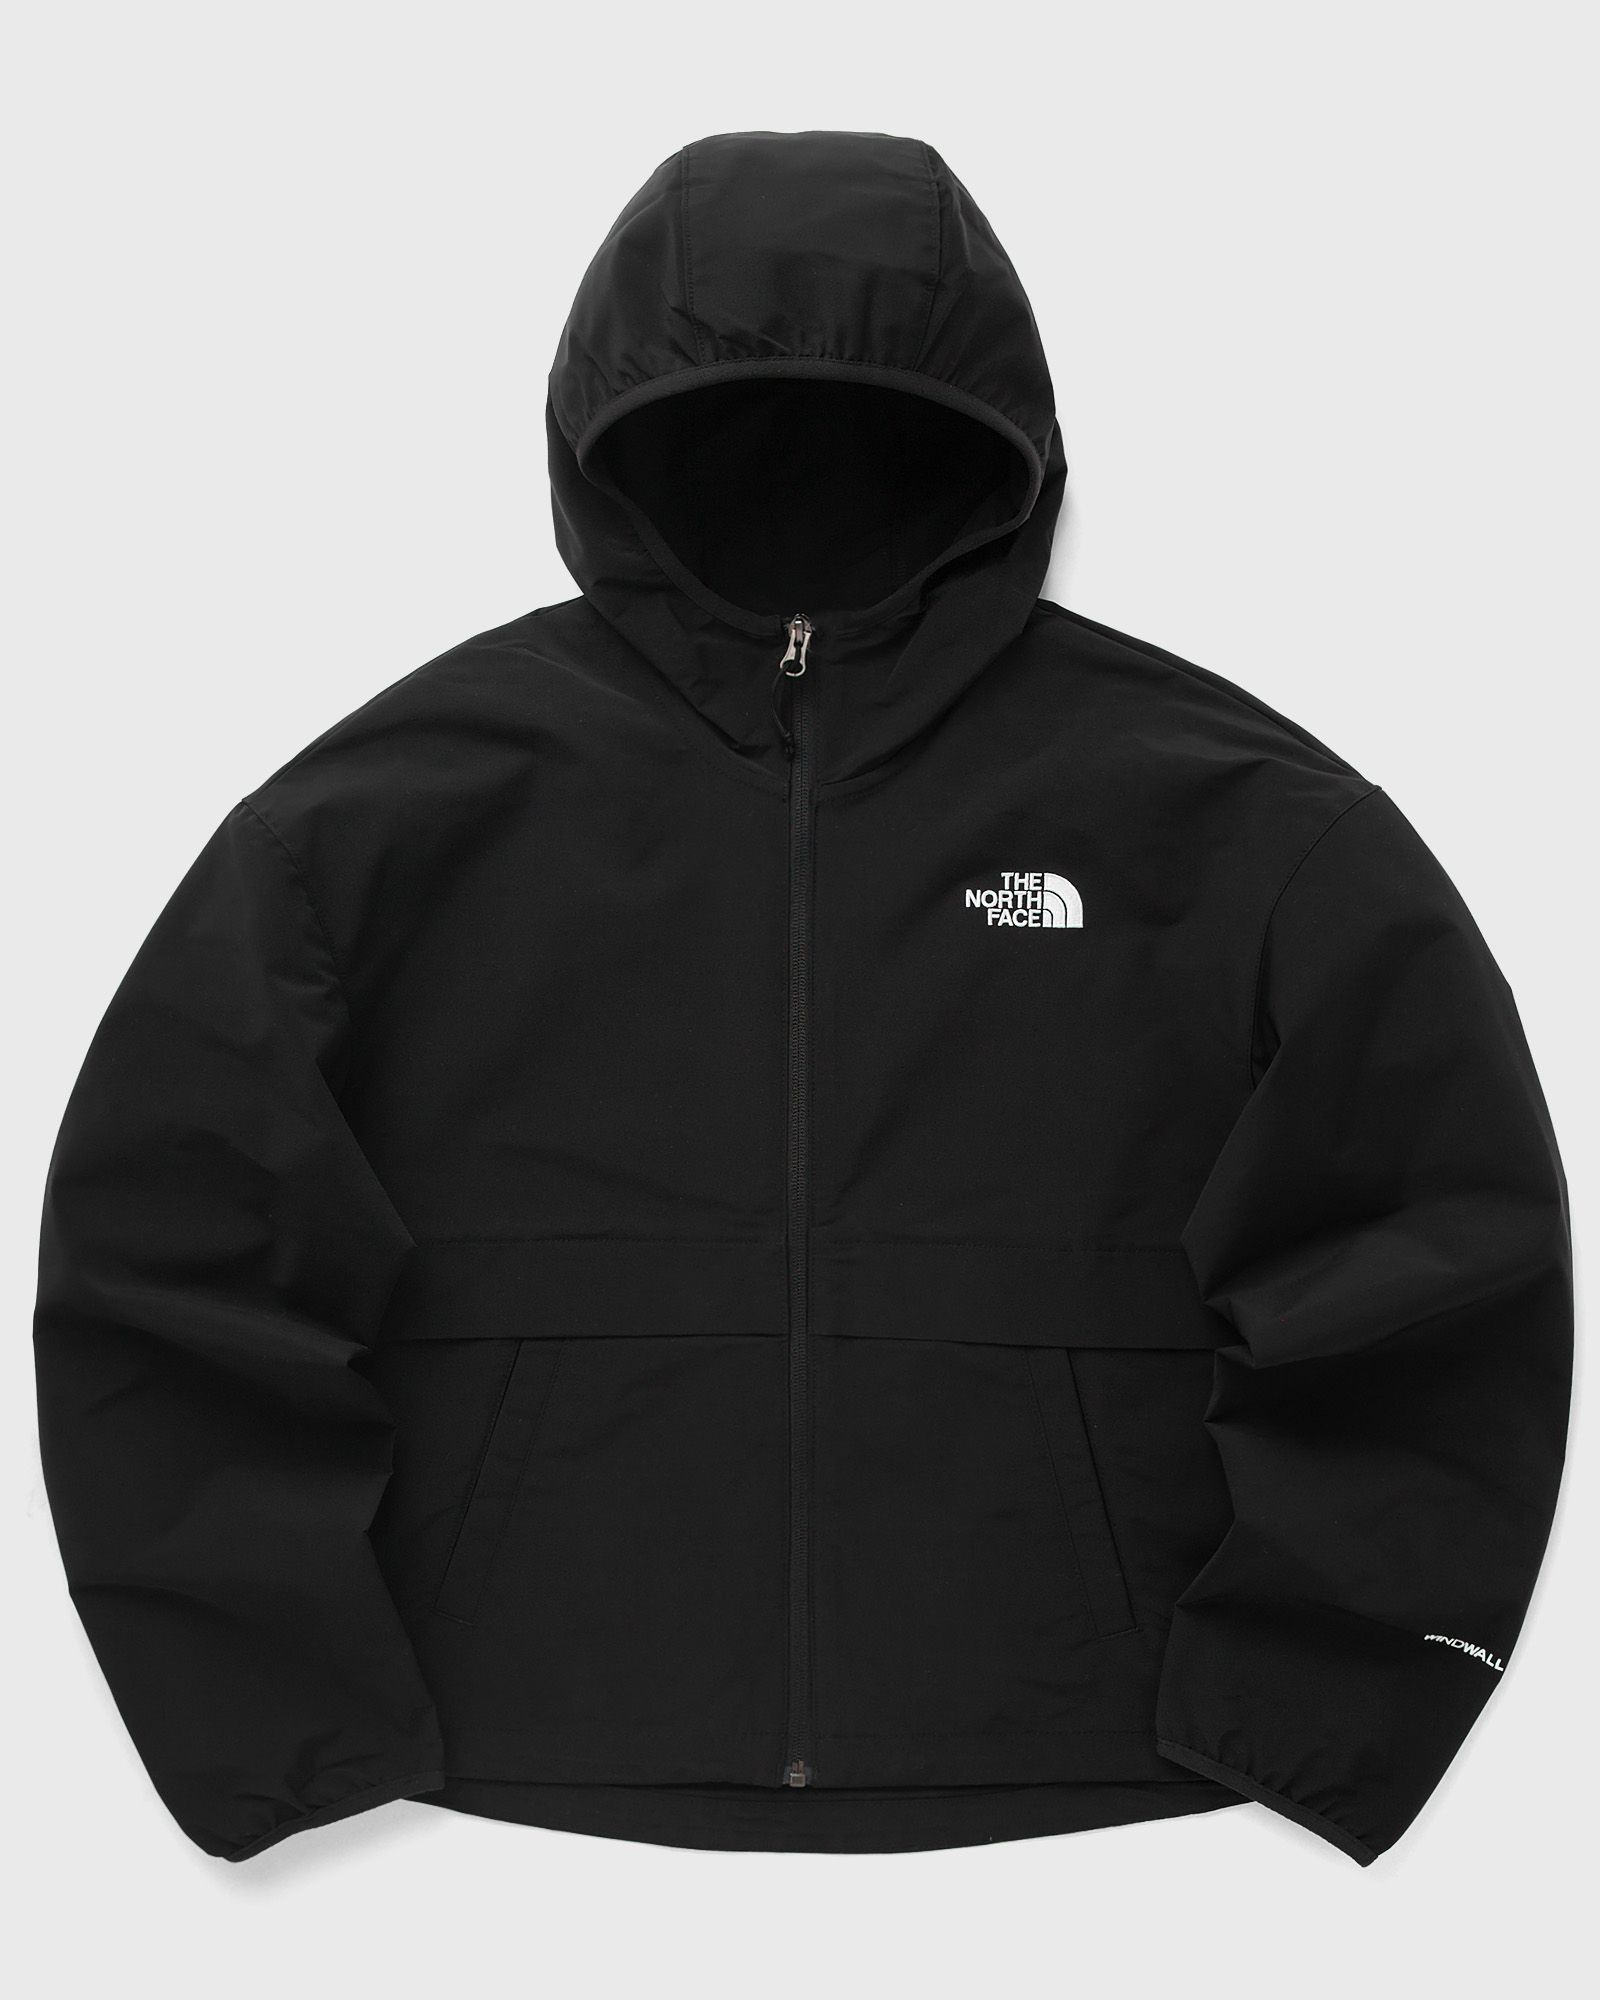 The North Face - w tnf easy wind fz jacket women fleece jackets|windbreaker black in größe:m